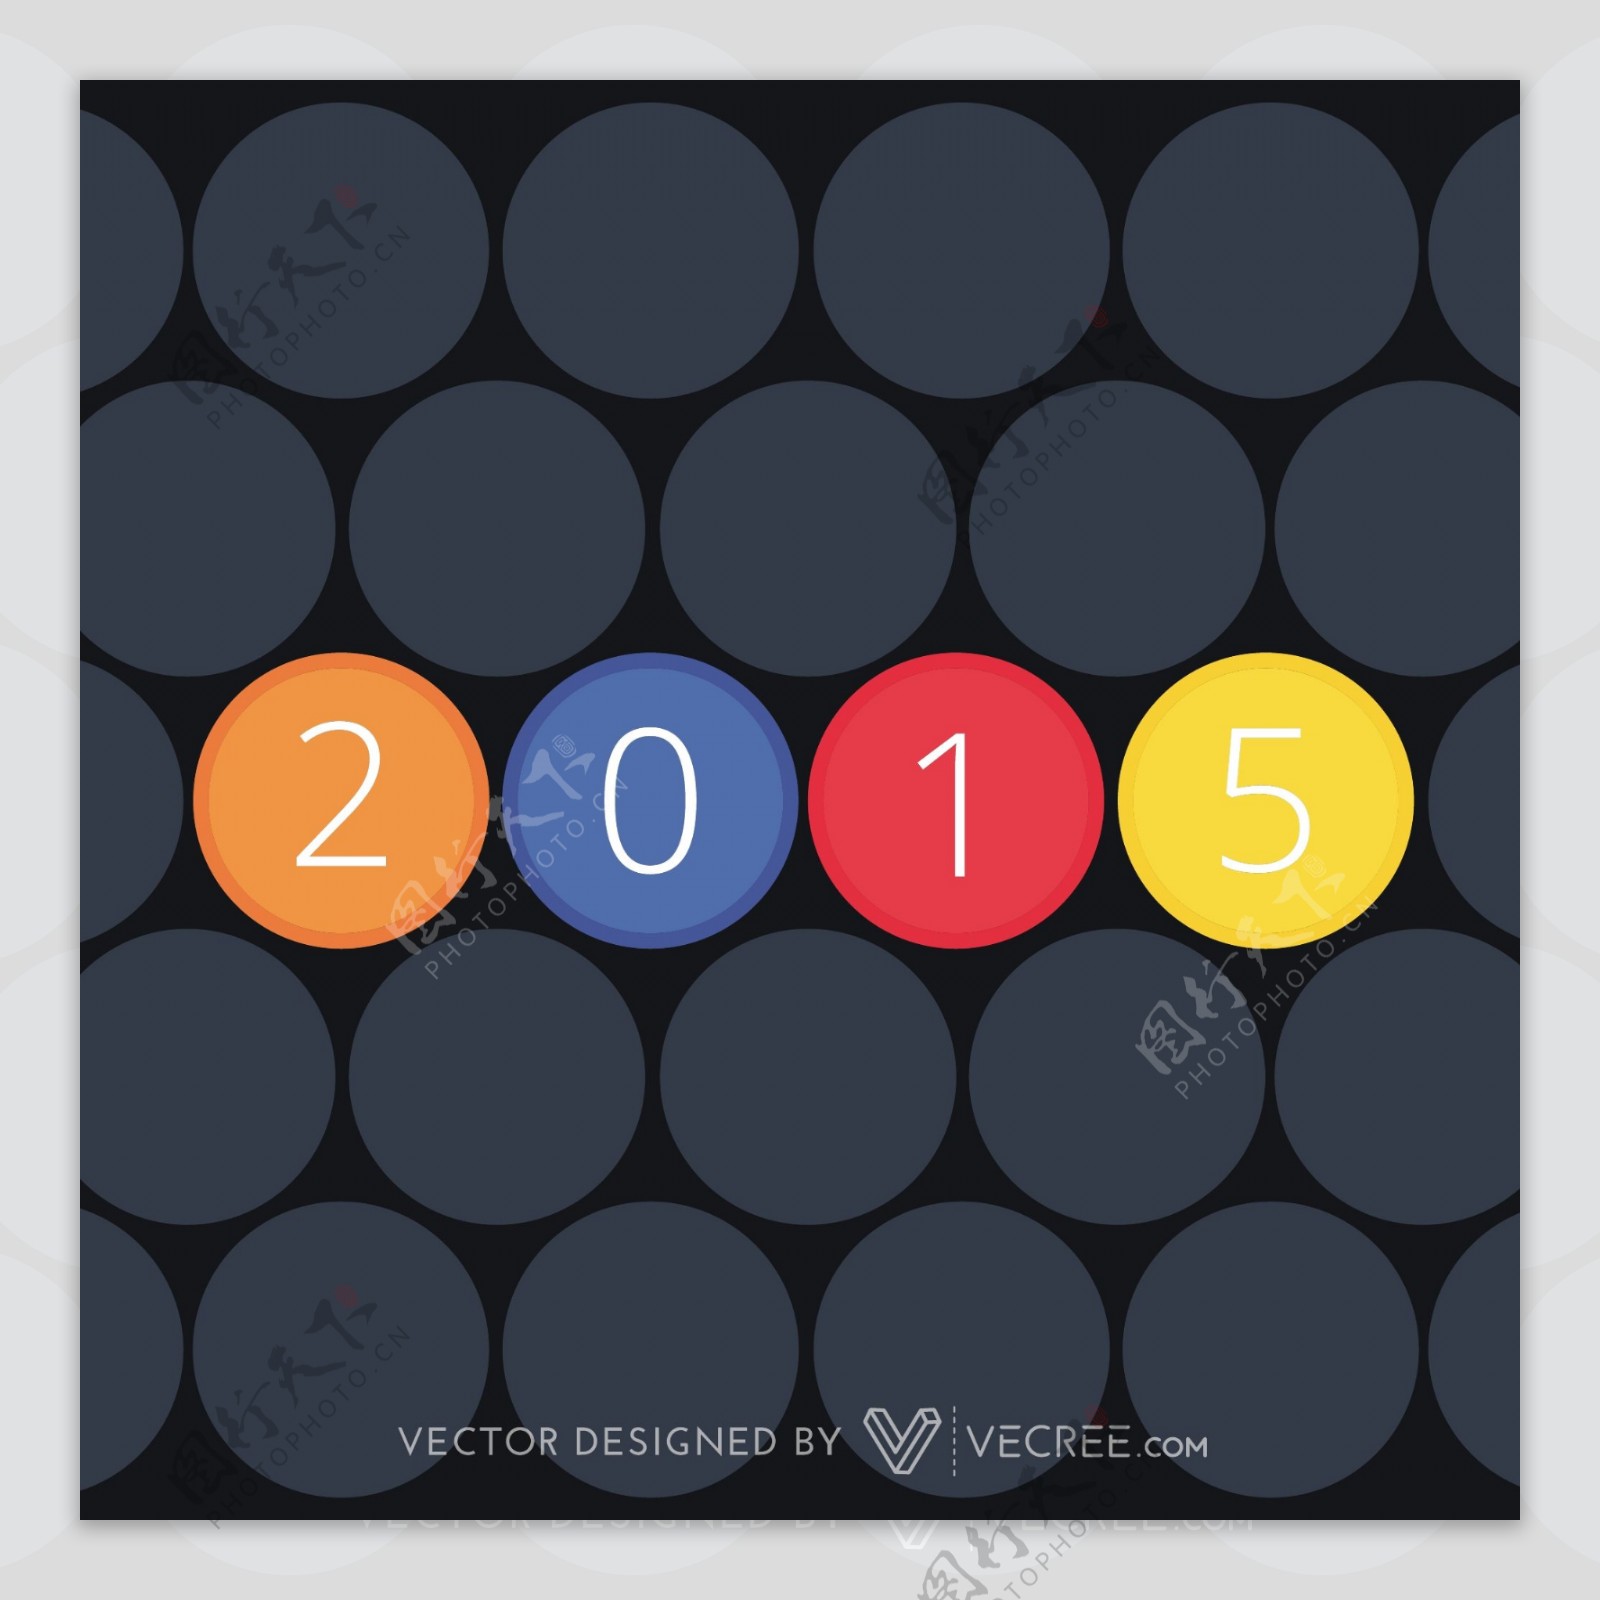 2015里面五颜六色的分开的圆圈